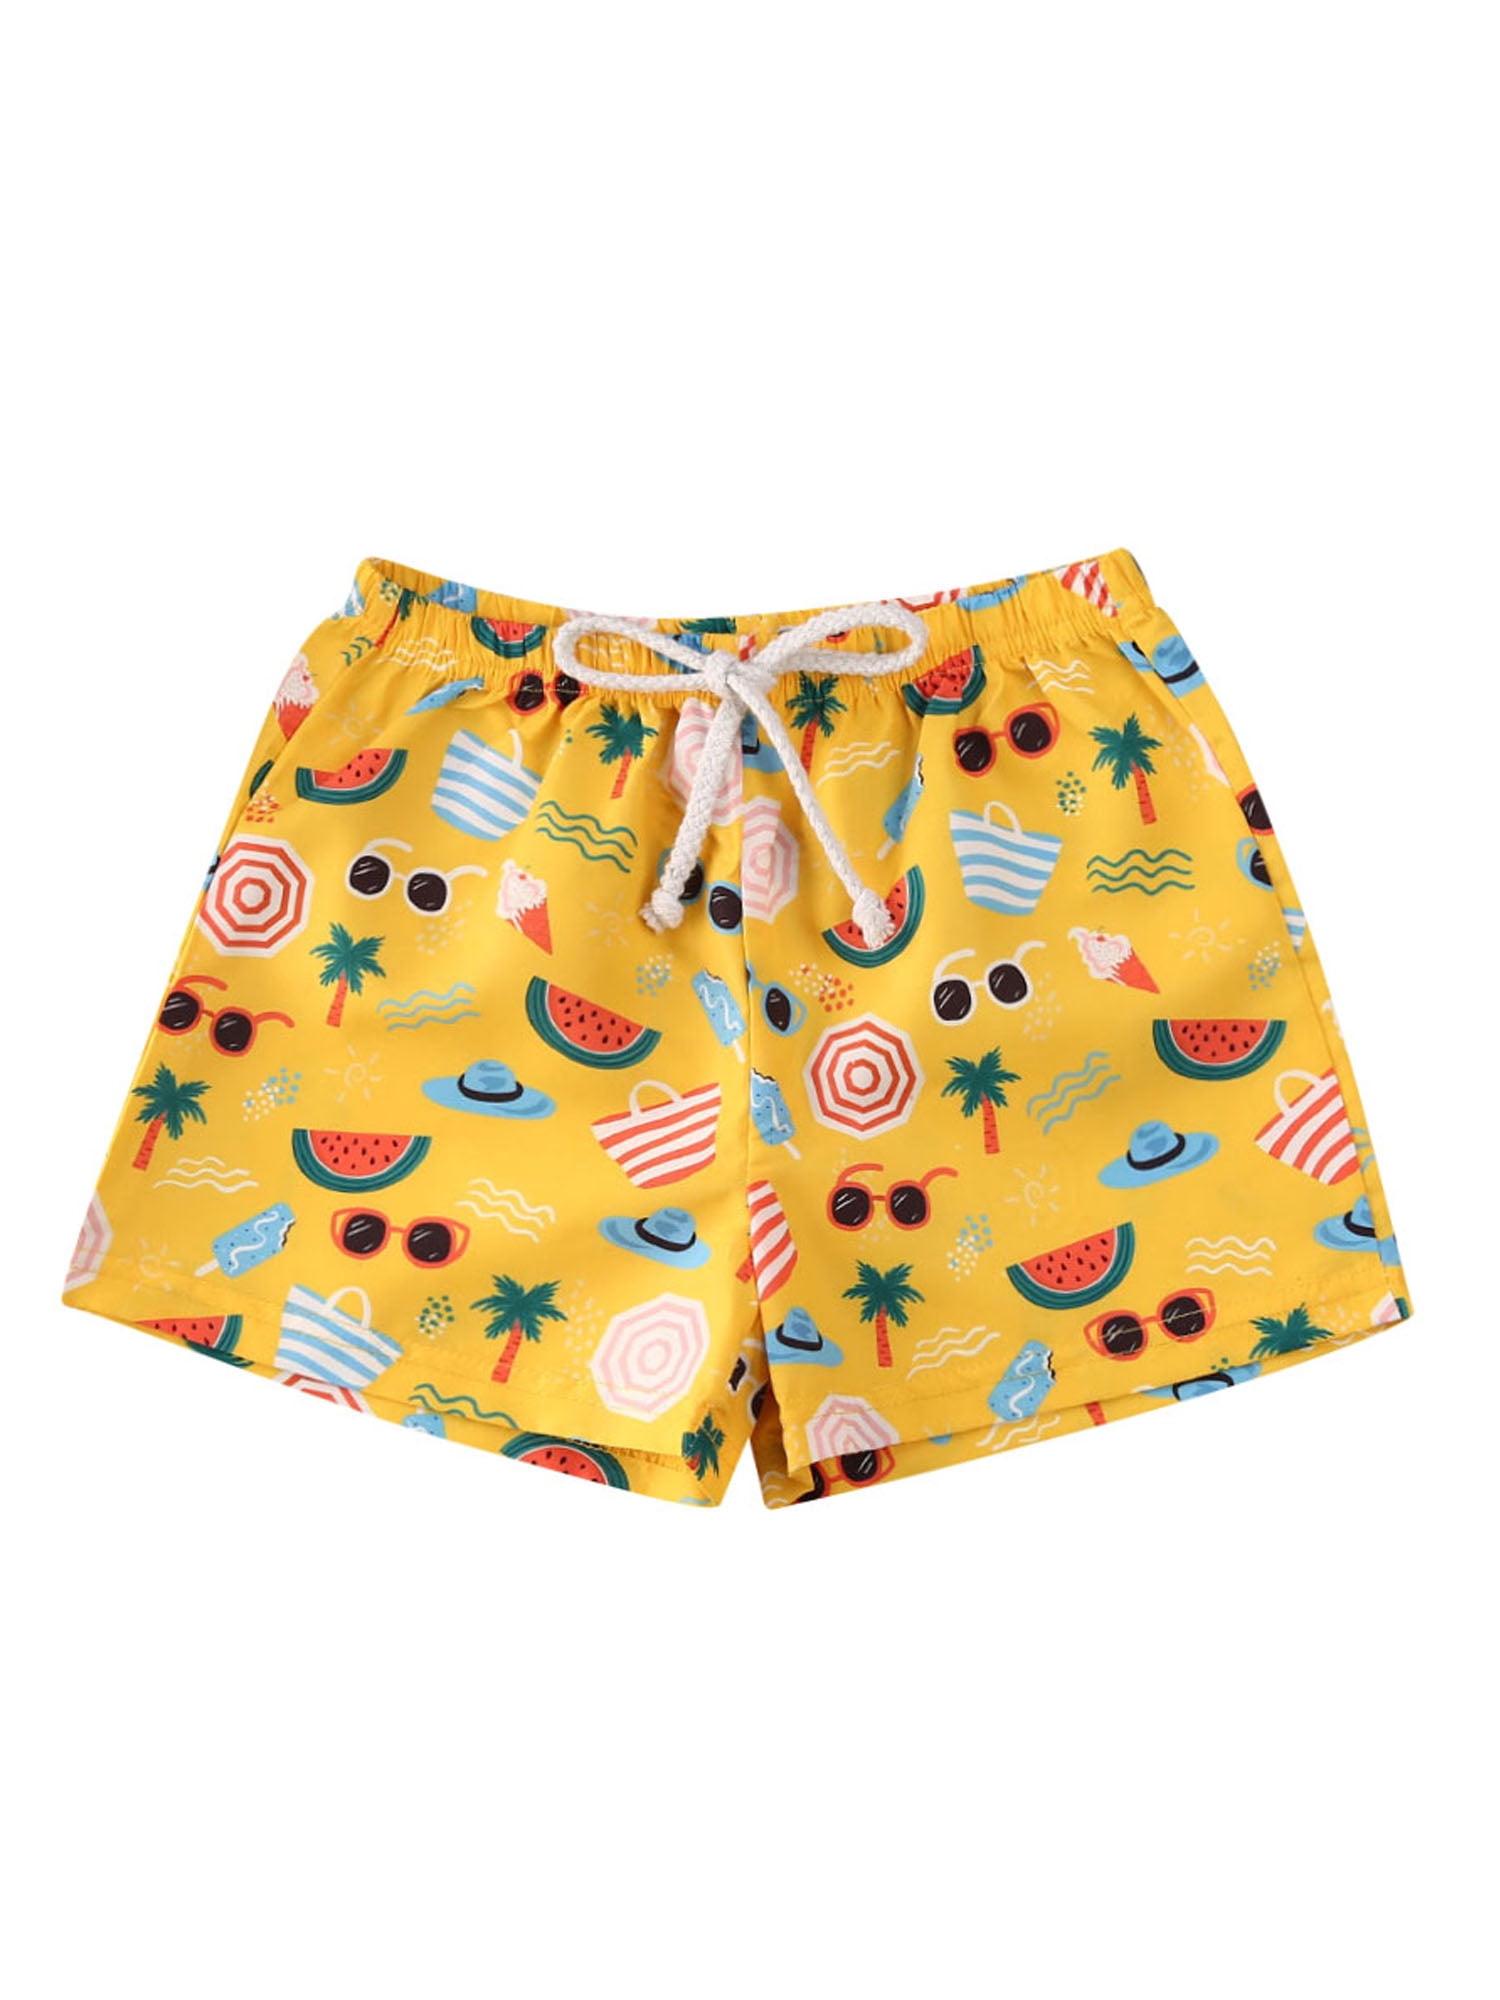 Infant Toddler Baby Boy Hawaiian Beach Shorts Swim Trunks Cartoon Animal Little Boys Board Shorts Swimwear 